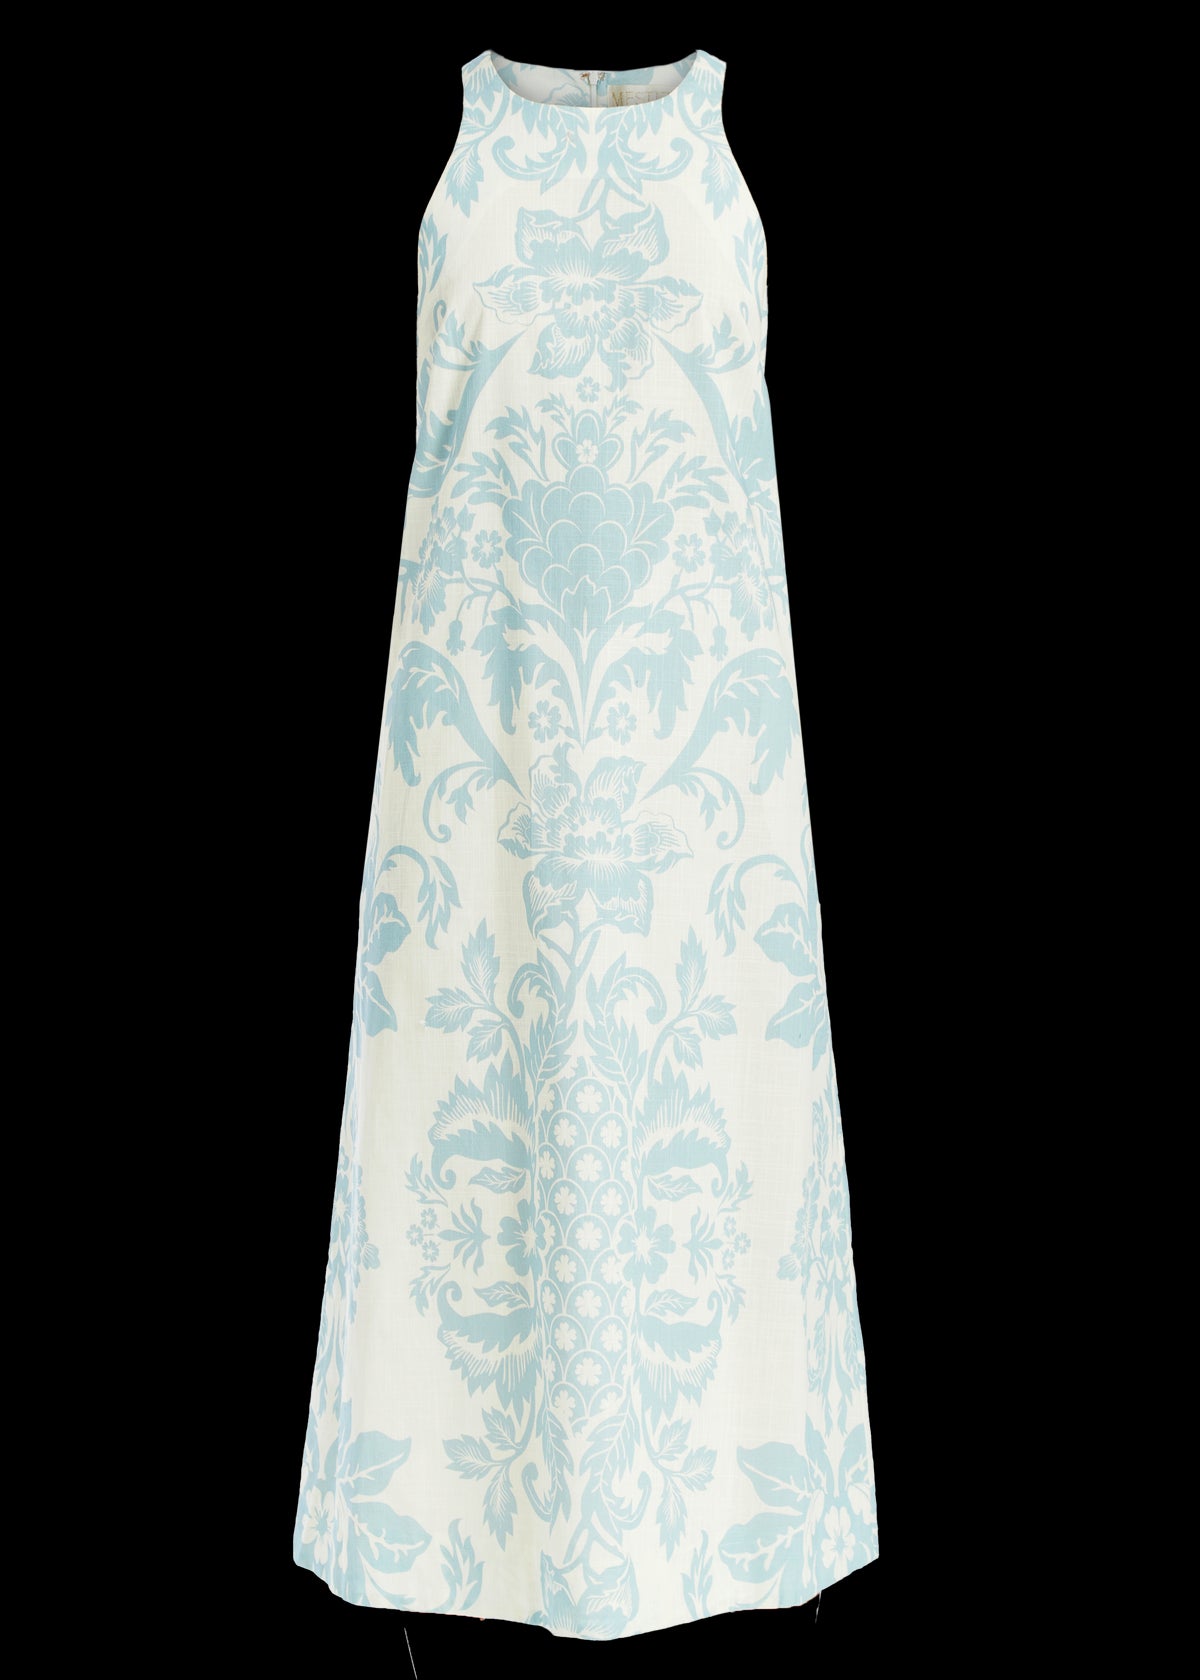 Farfalle Midi Dress in Blue & Ivory